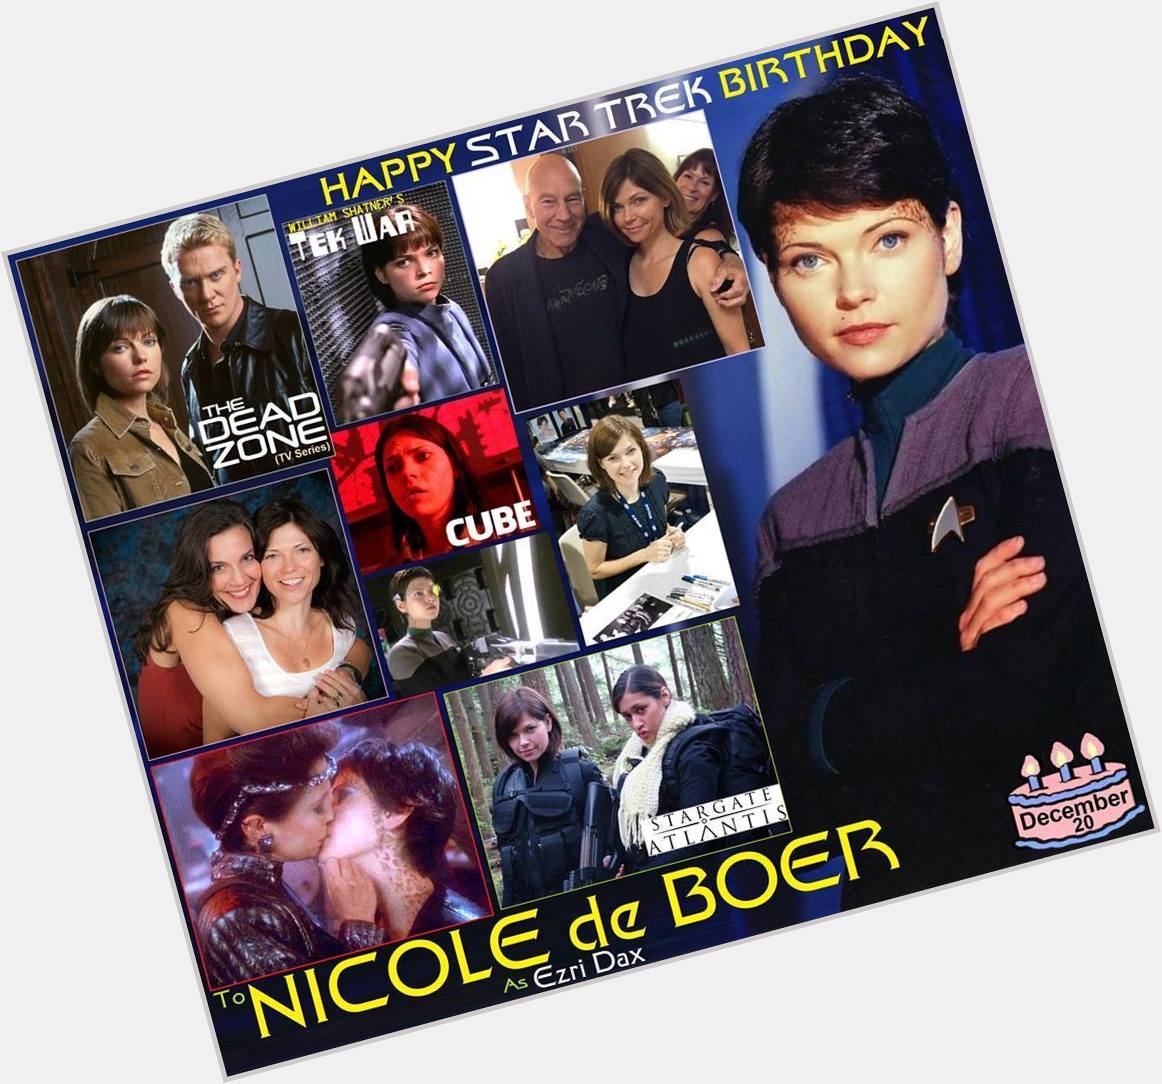 Happy birthday to Nicole De Boer, born December 20, 1970.  